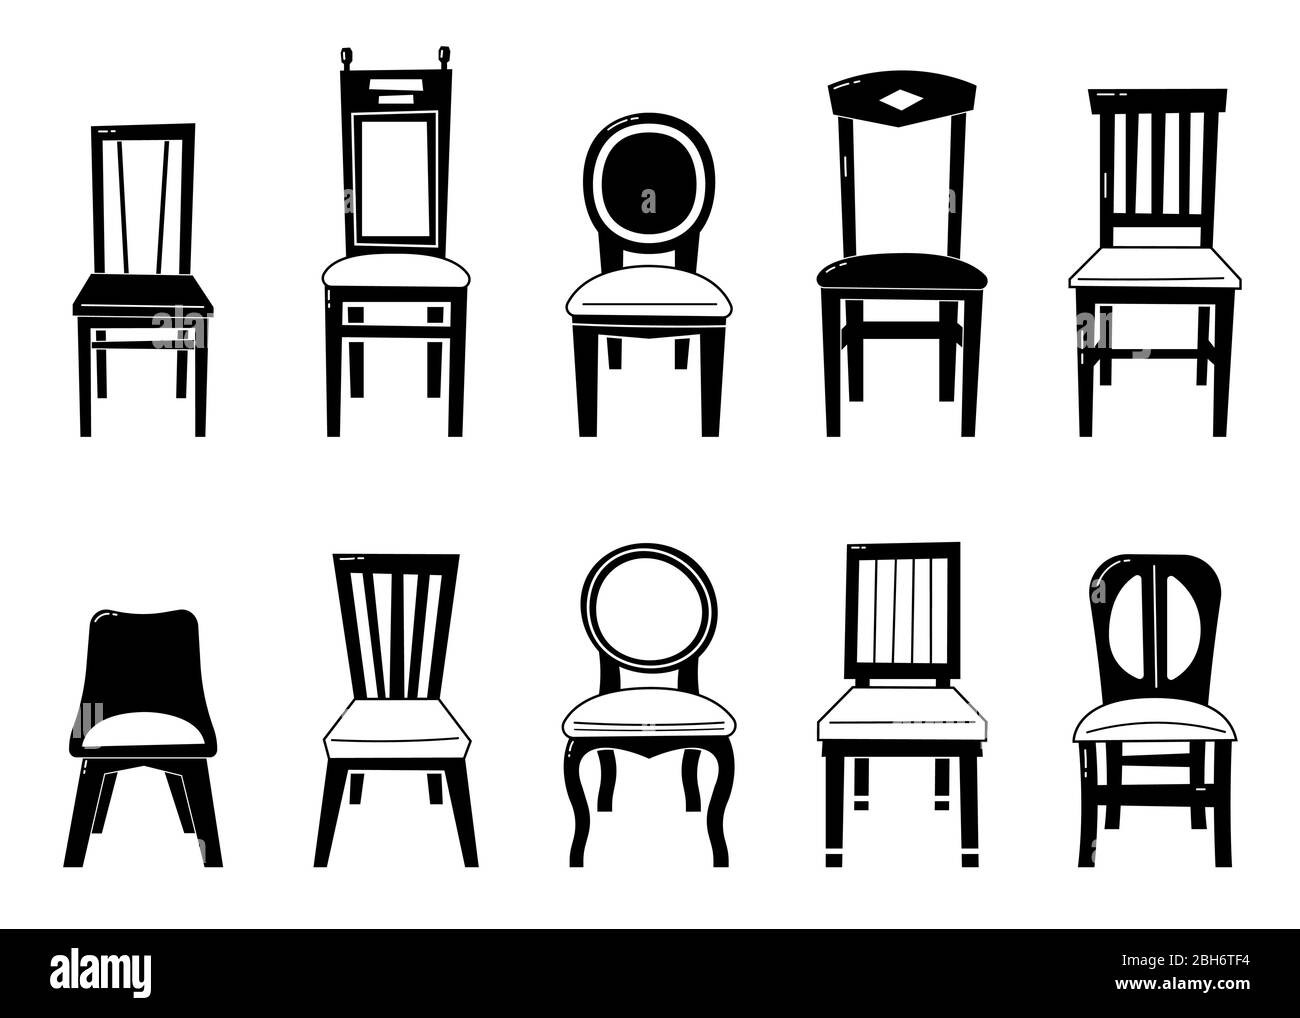 Stuhl Set Vektor. Tischstühle Und Möbel. Verschiedene Typen. Stock Vektor